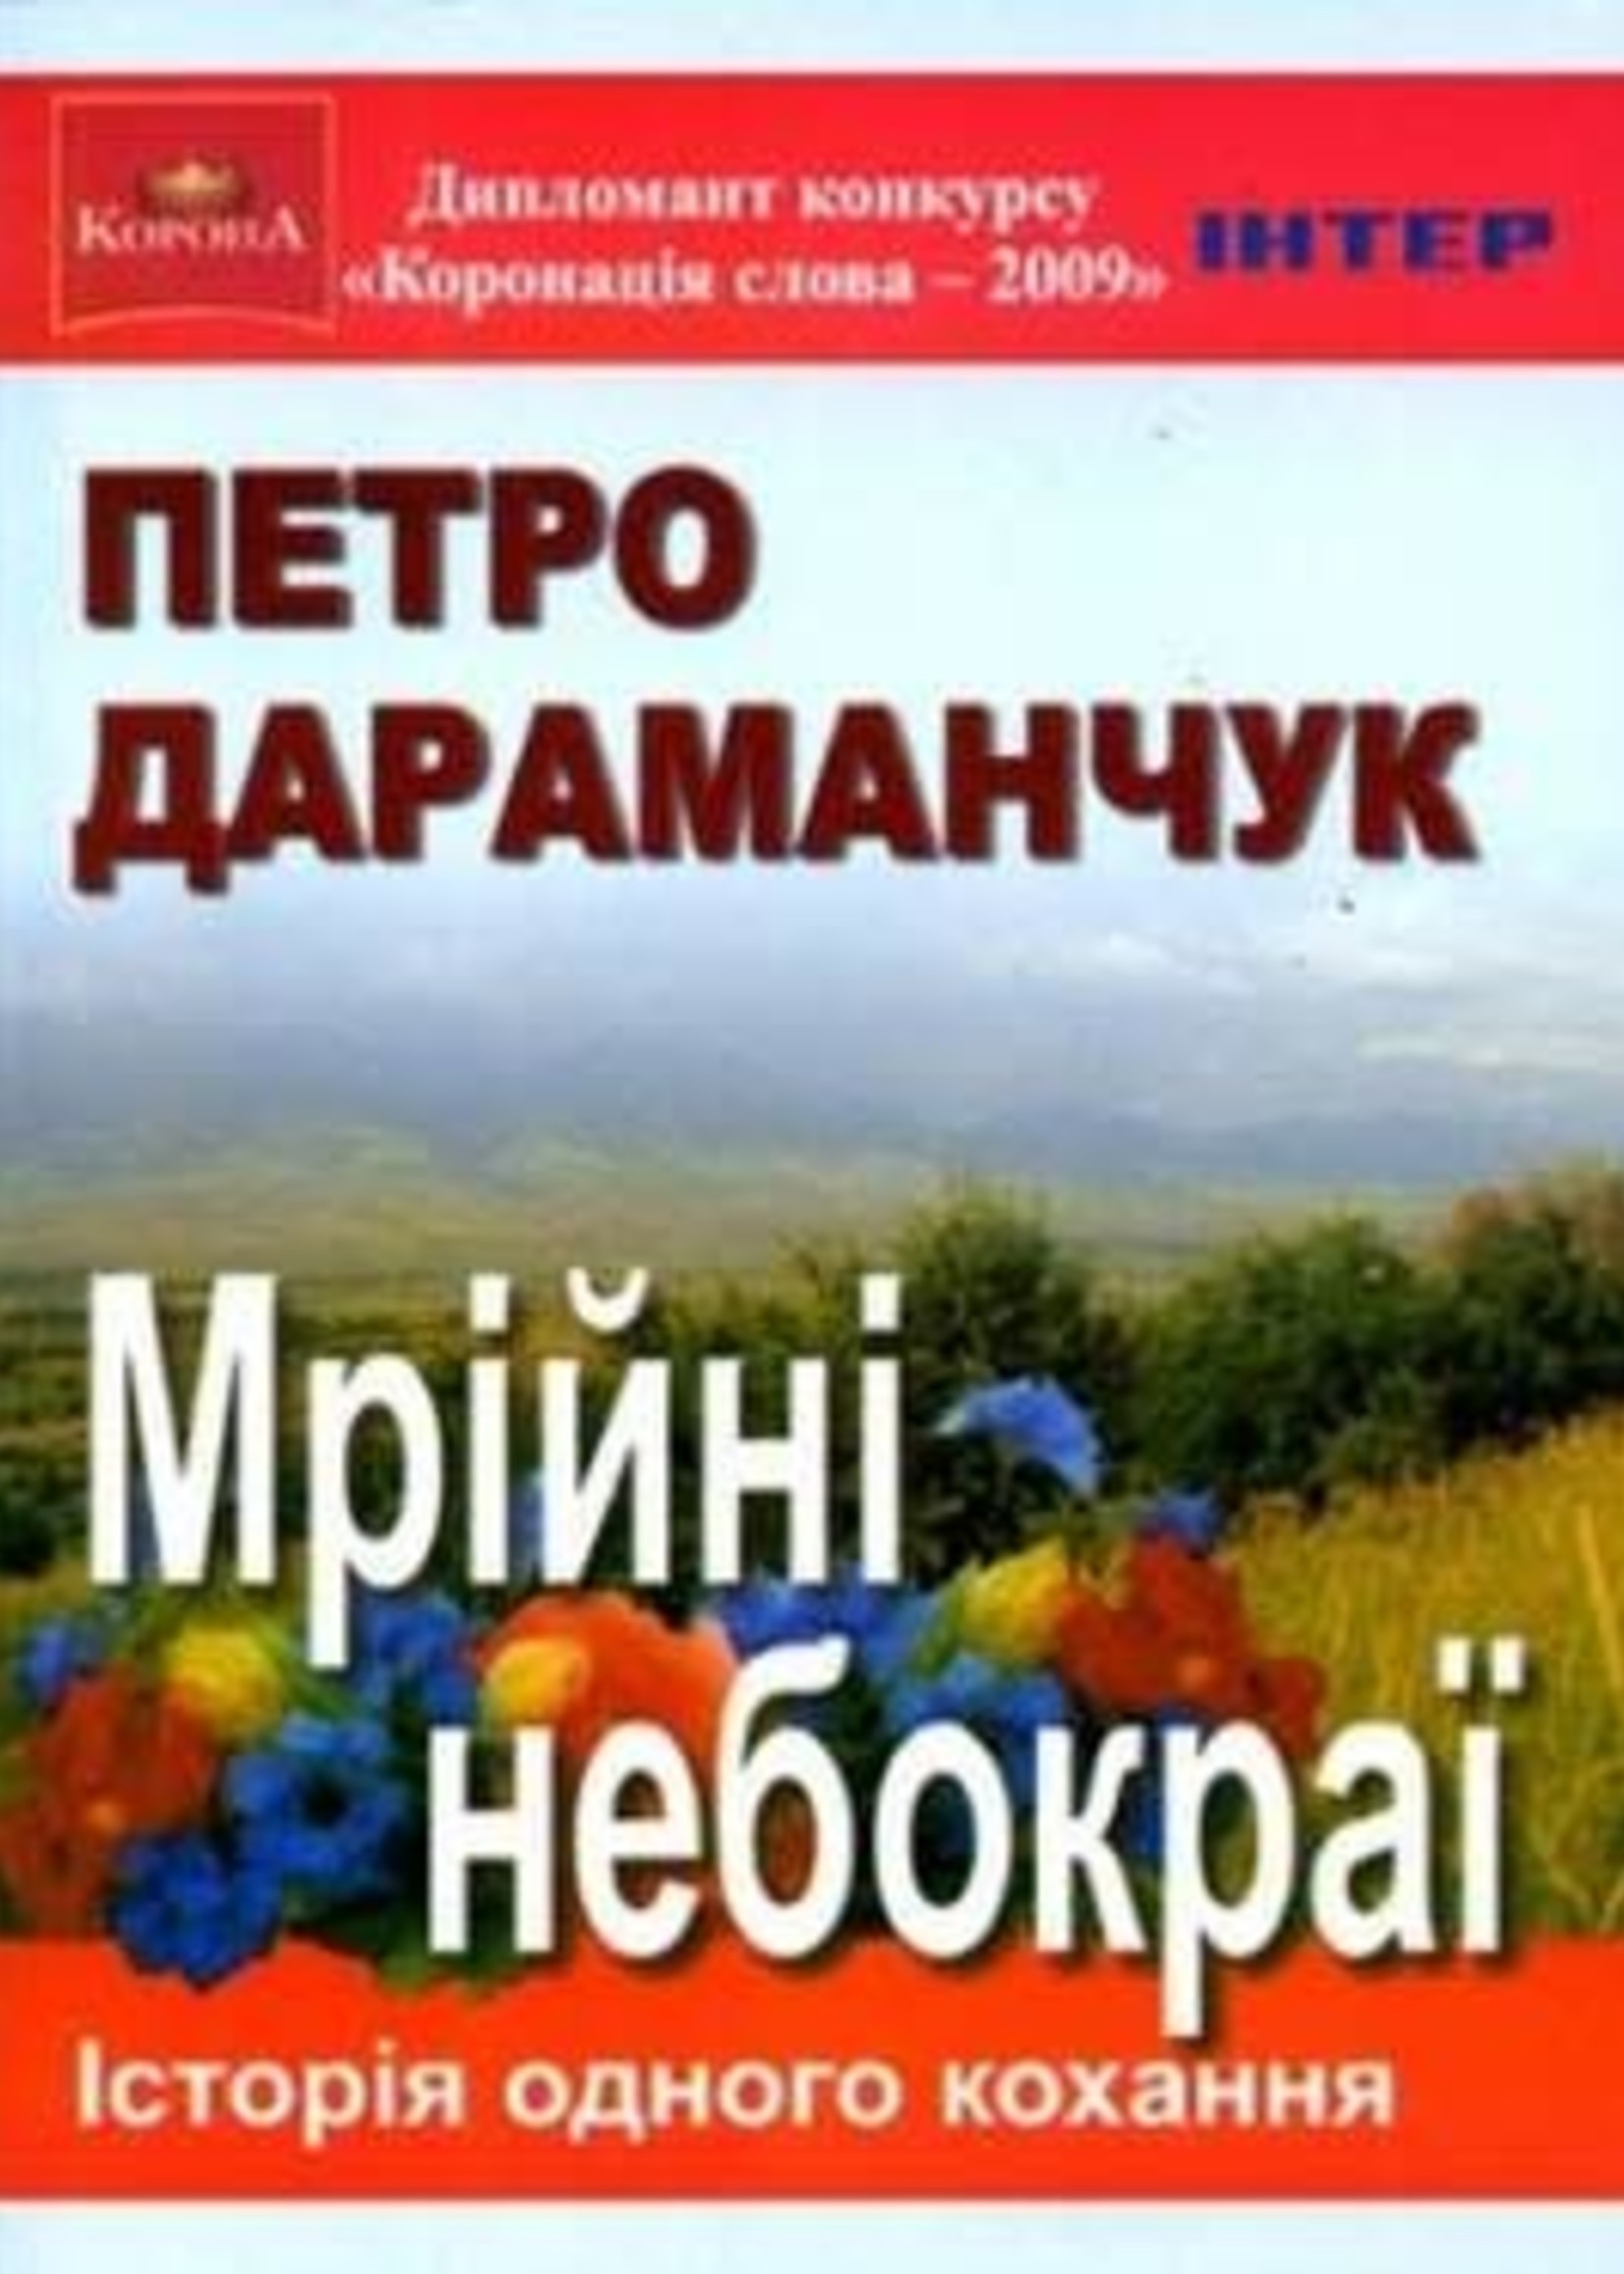 None BOOK - Dreamy Skies /  Mriini  Nebokraii  by Petro Daramanchuk